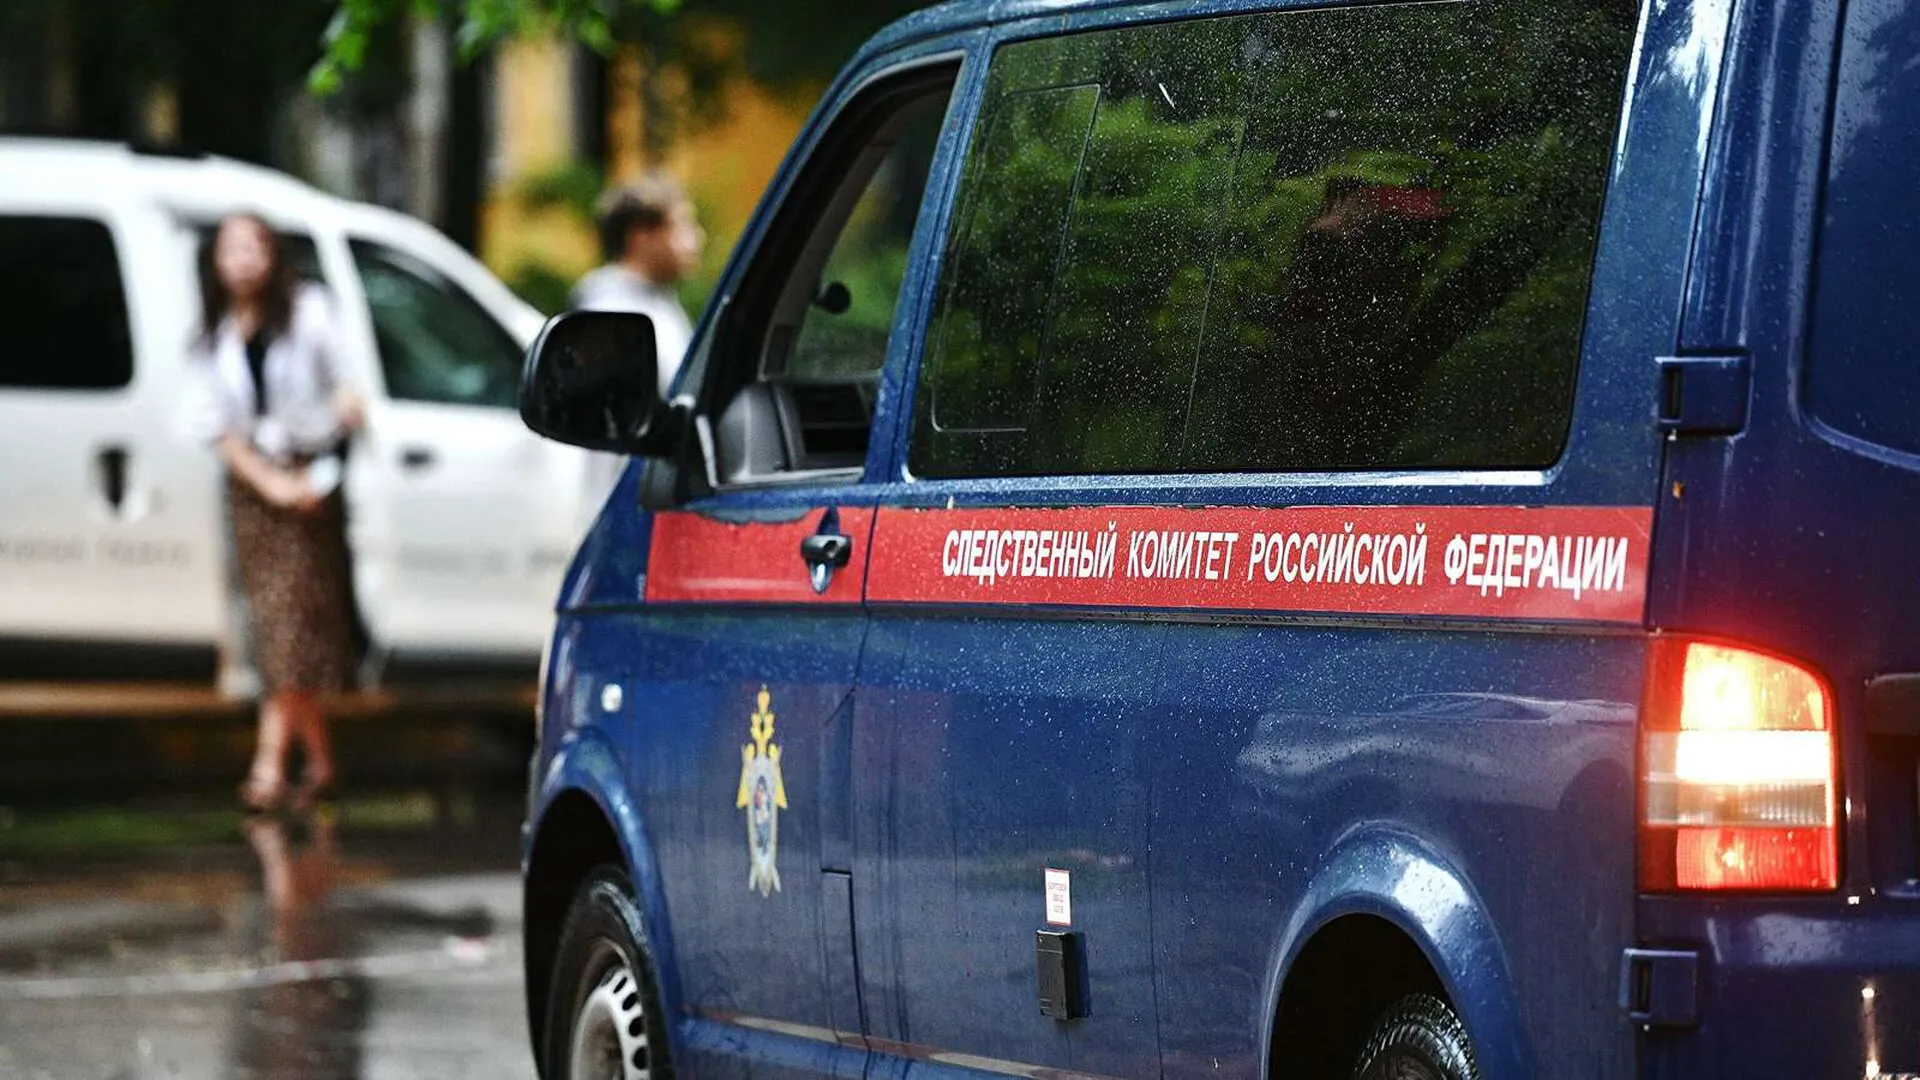 СК завел дело о незаконном лишении свободы после захвата детей в заложники в Петербурге